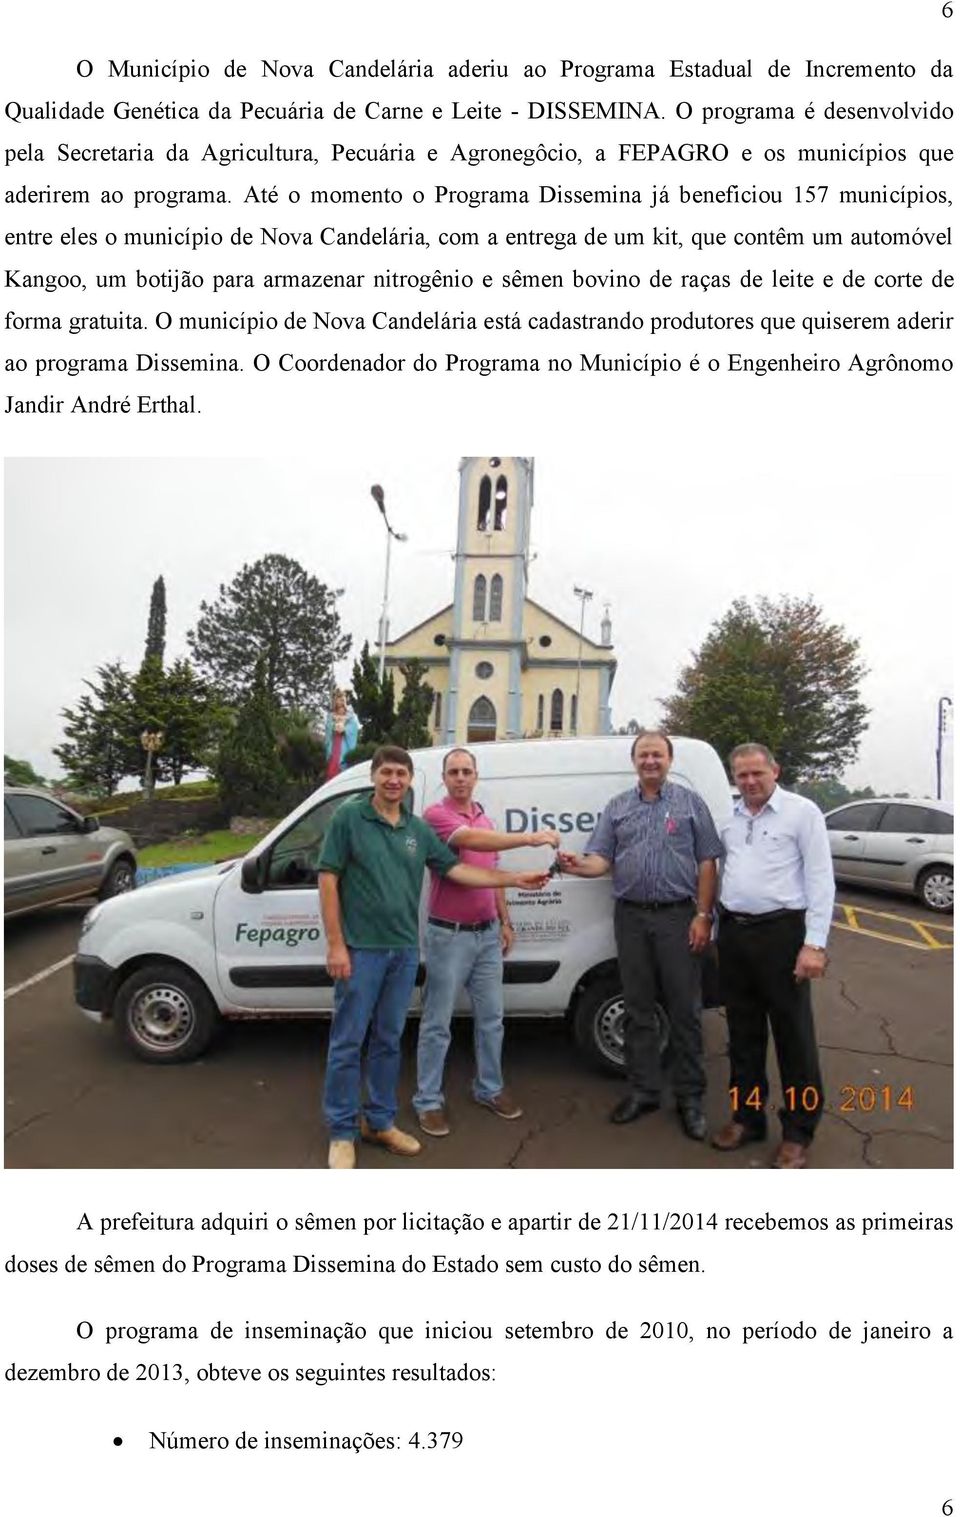 Até o momento o Programa Dissemina já beneficiou 157 municípios, entre eles o município de Nova Candelária, com a entrega de um kit, que contêm um automóvel Kangoo, um botijão para armazenar